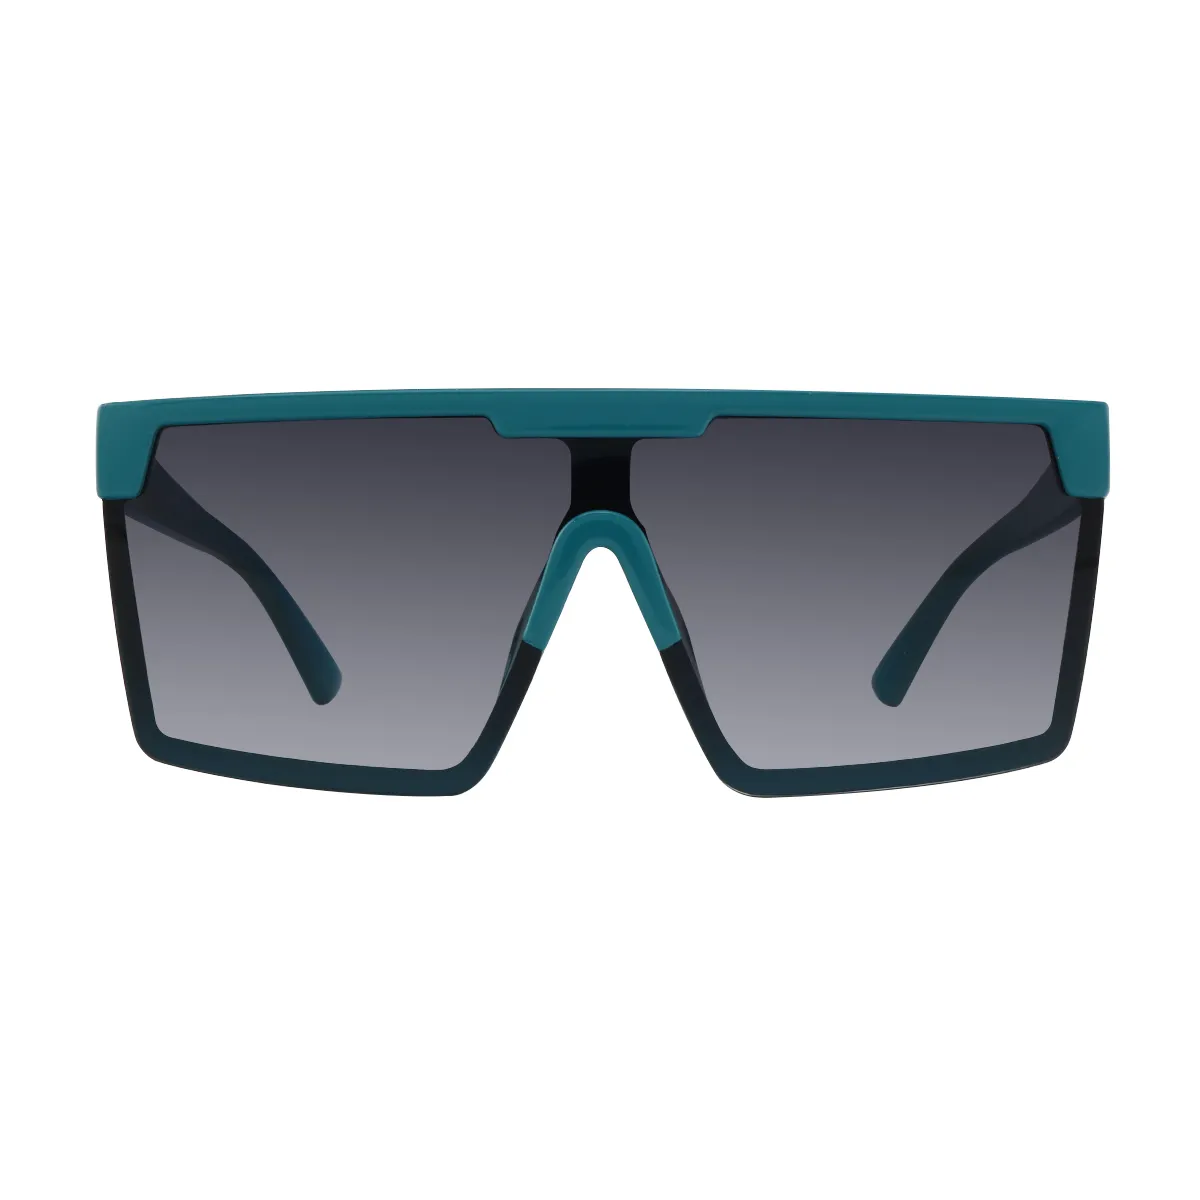 Reese - glasses Lake-blue Sunglasses for Women